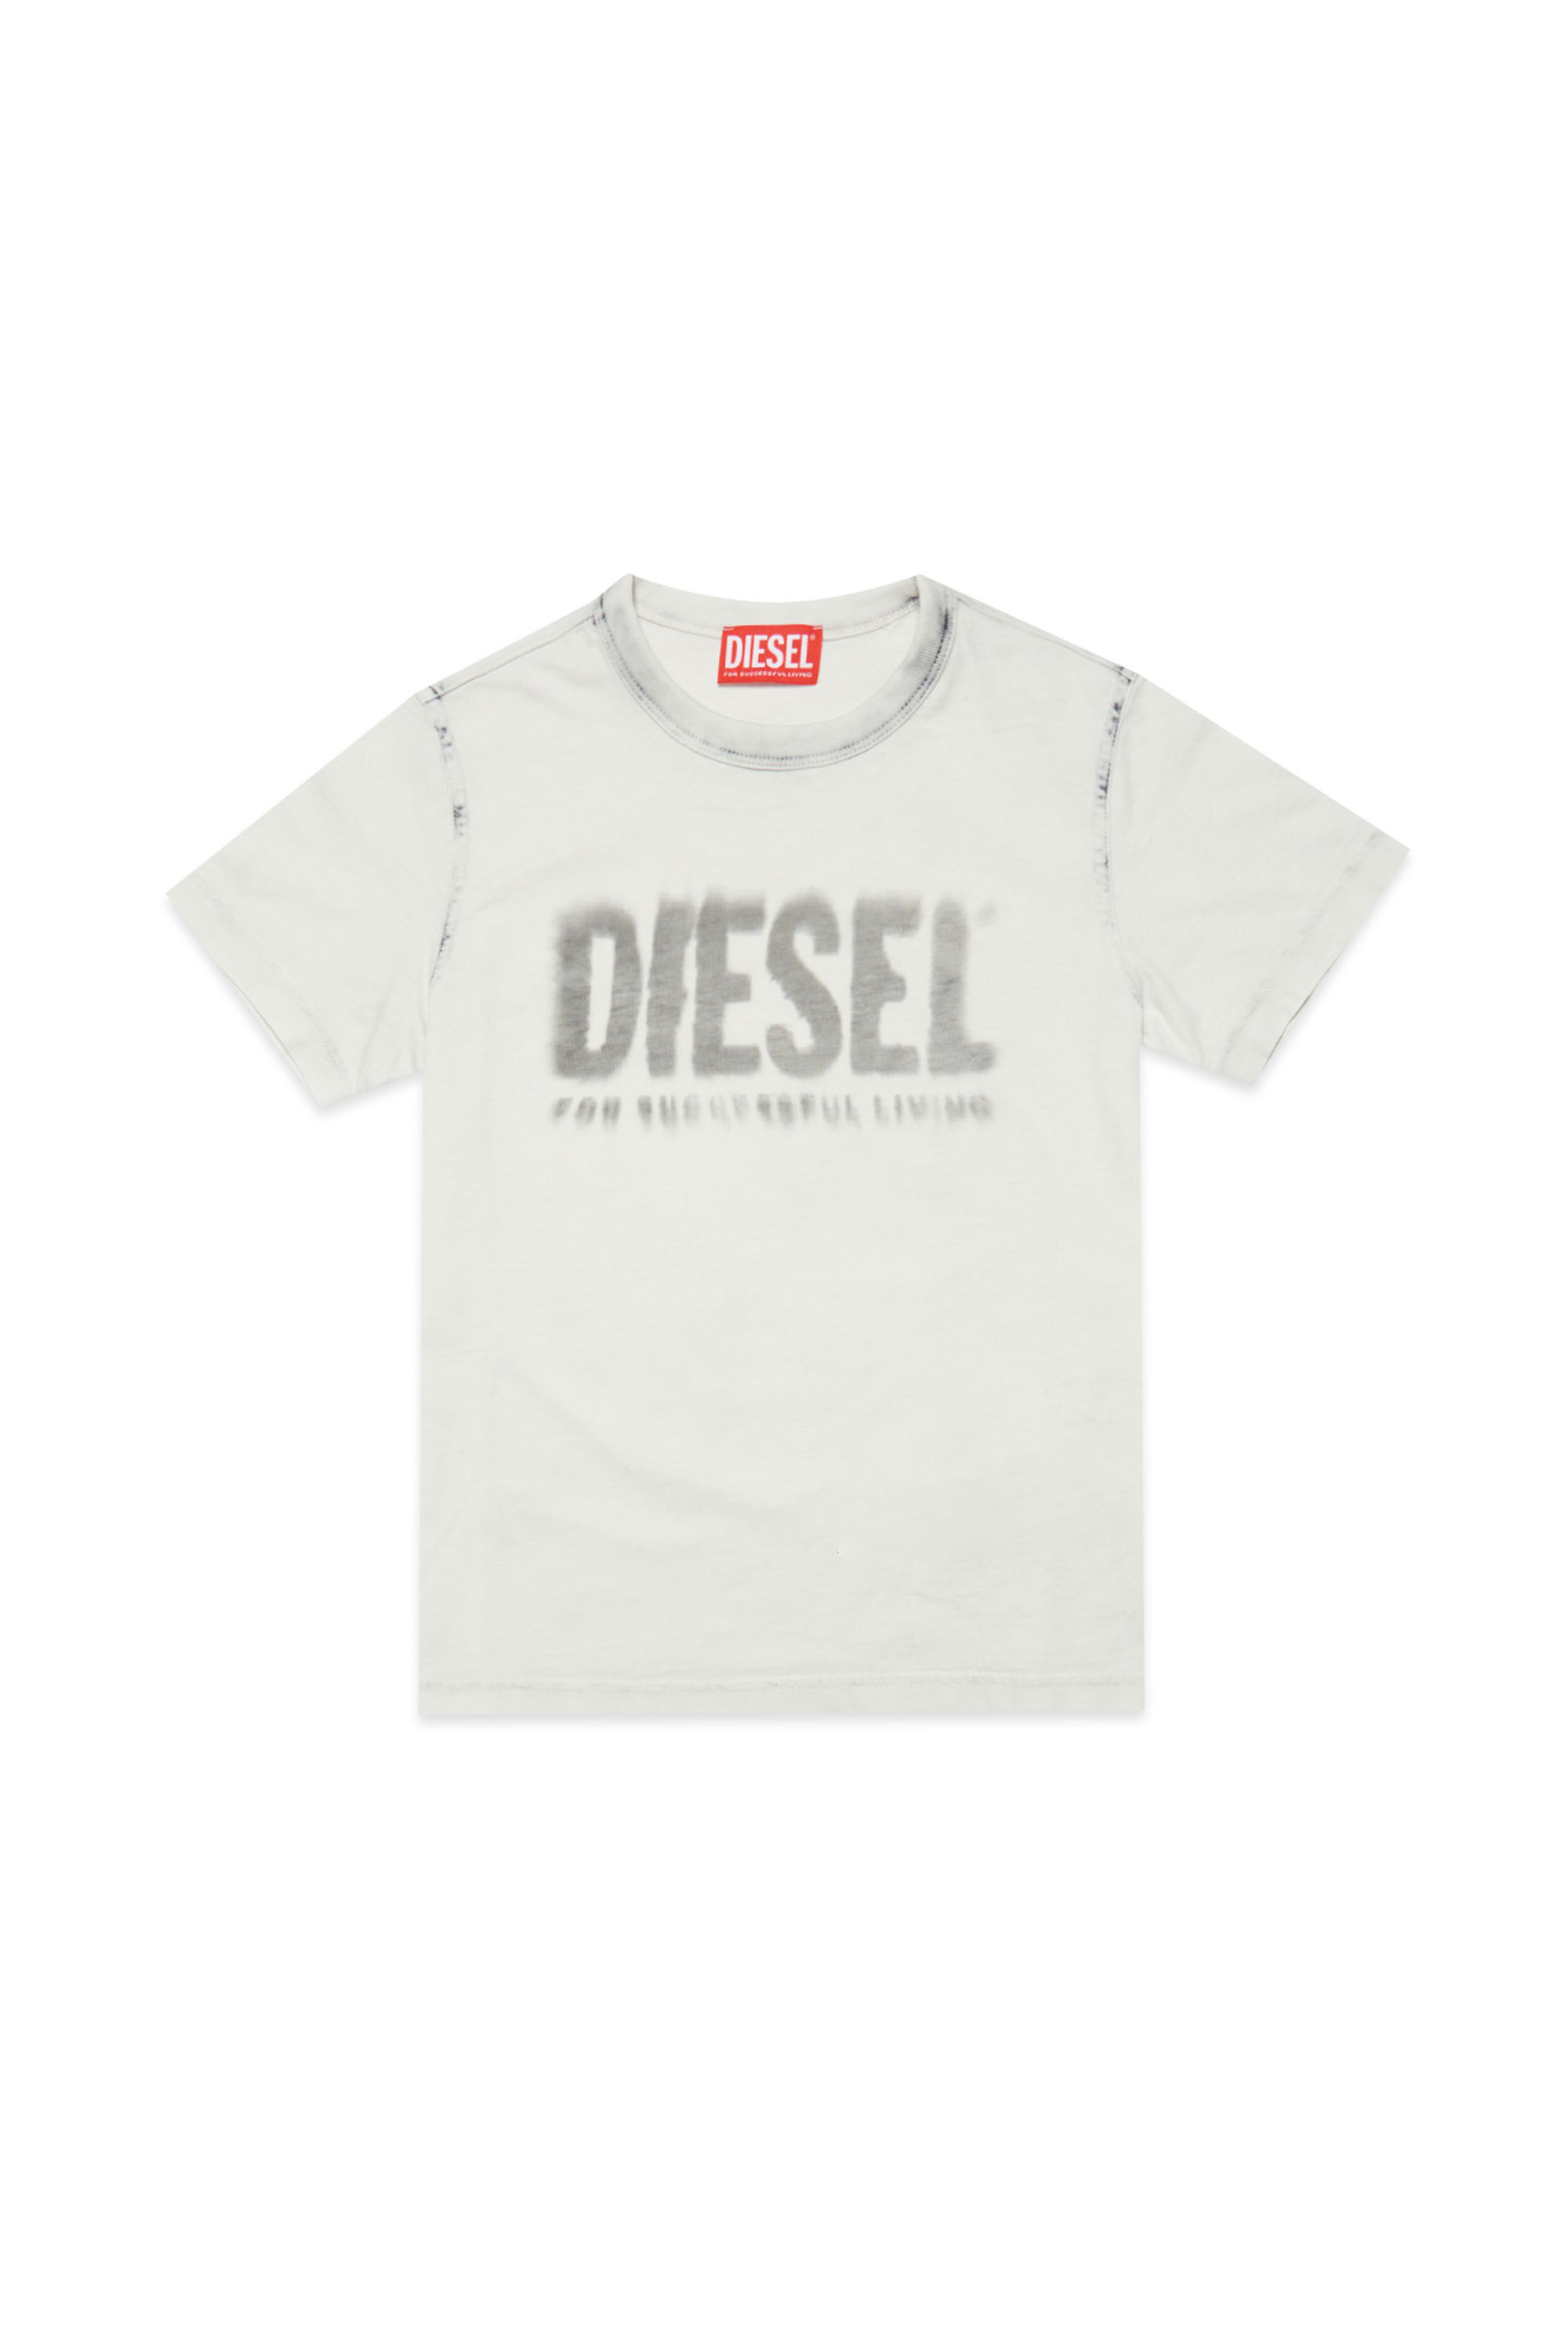 Diesel - TDIEGORE6, Blanco/Gris - Image 1